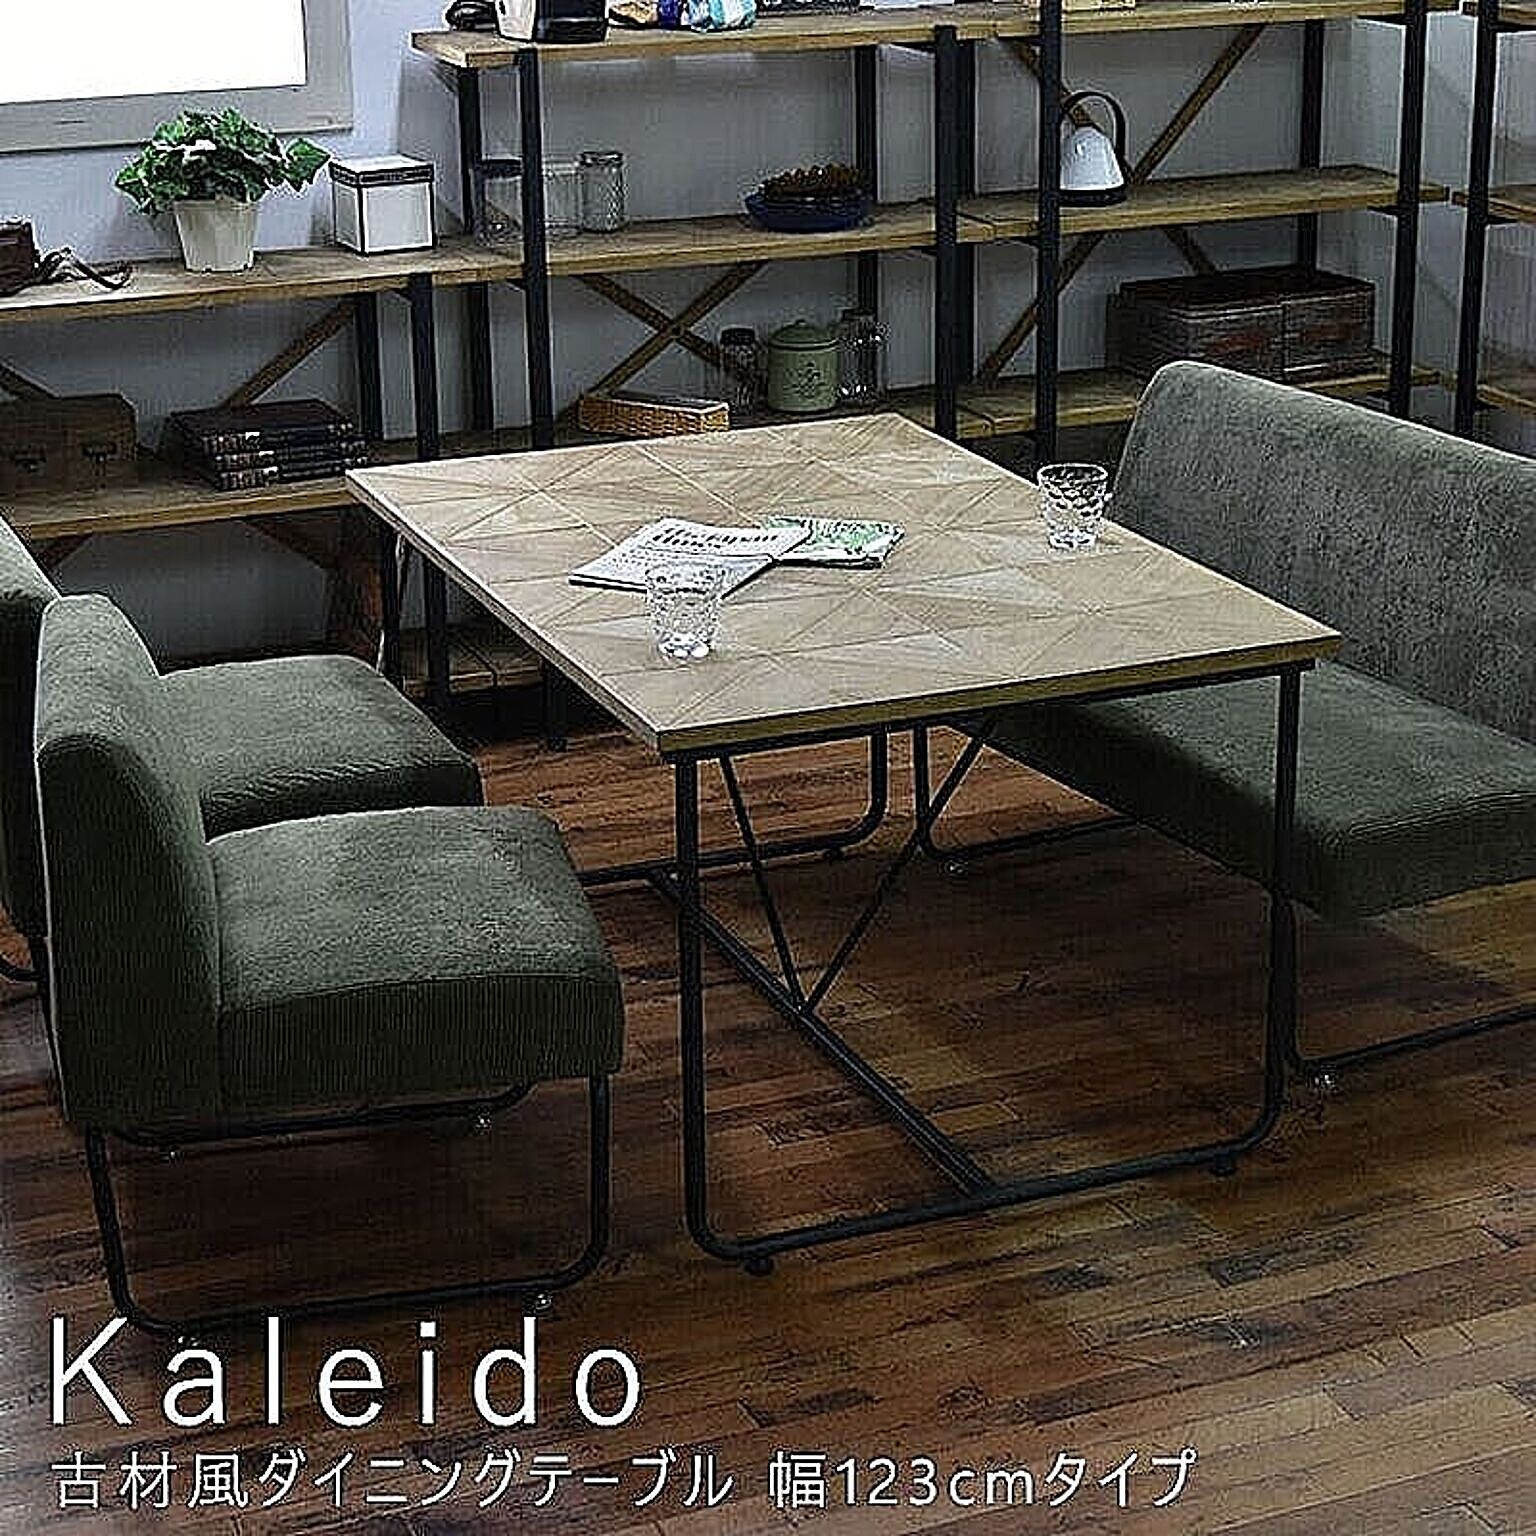 B.Bファニシング Kaleido 古材風ダイニングテーブル 幅123cm ベージュ m00620